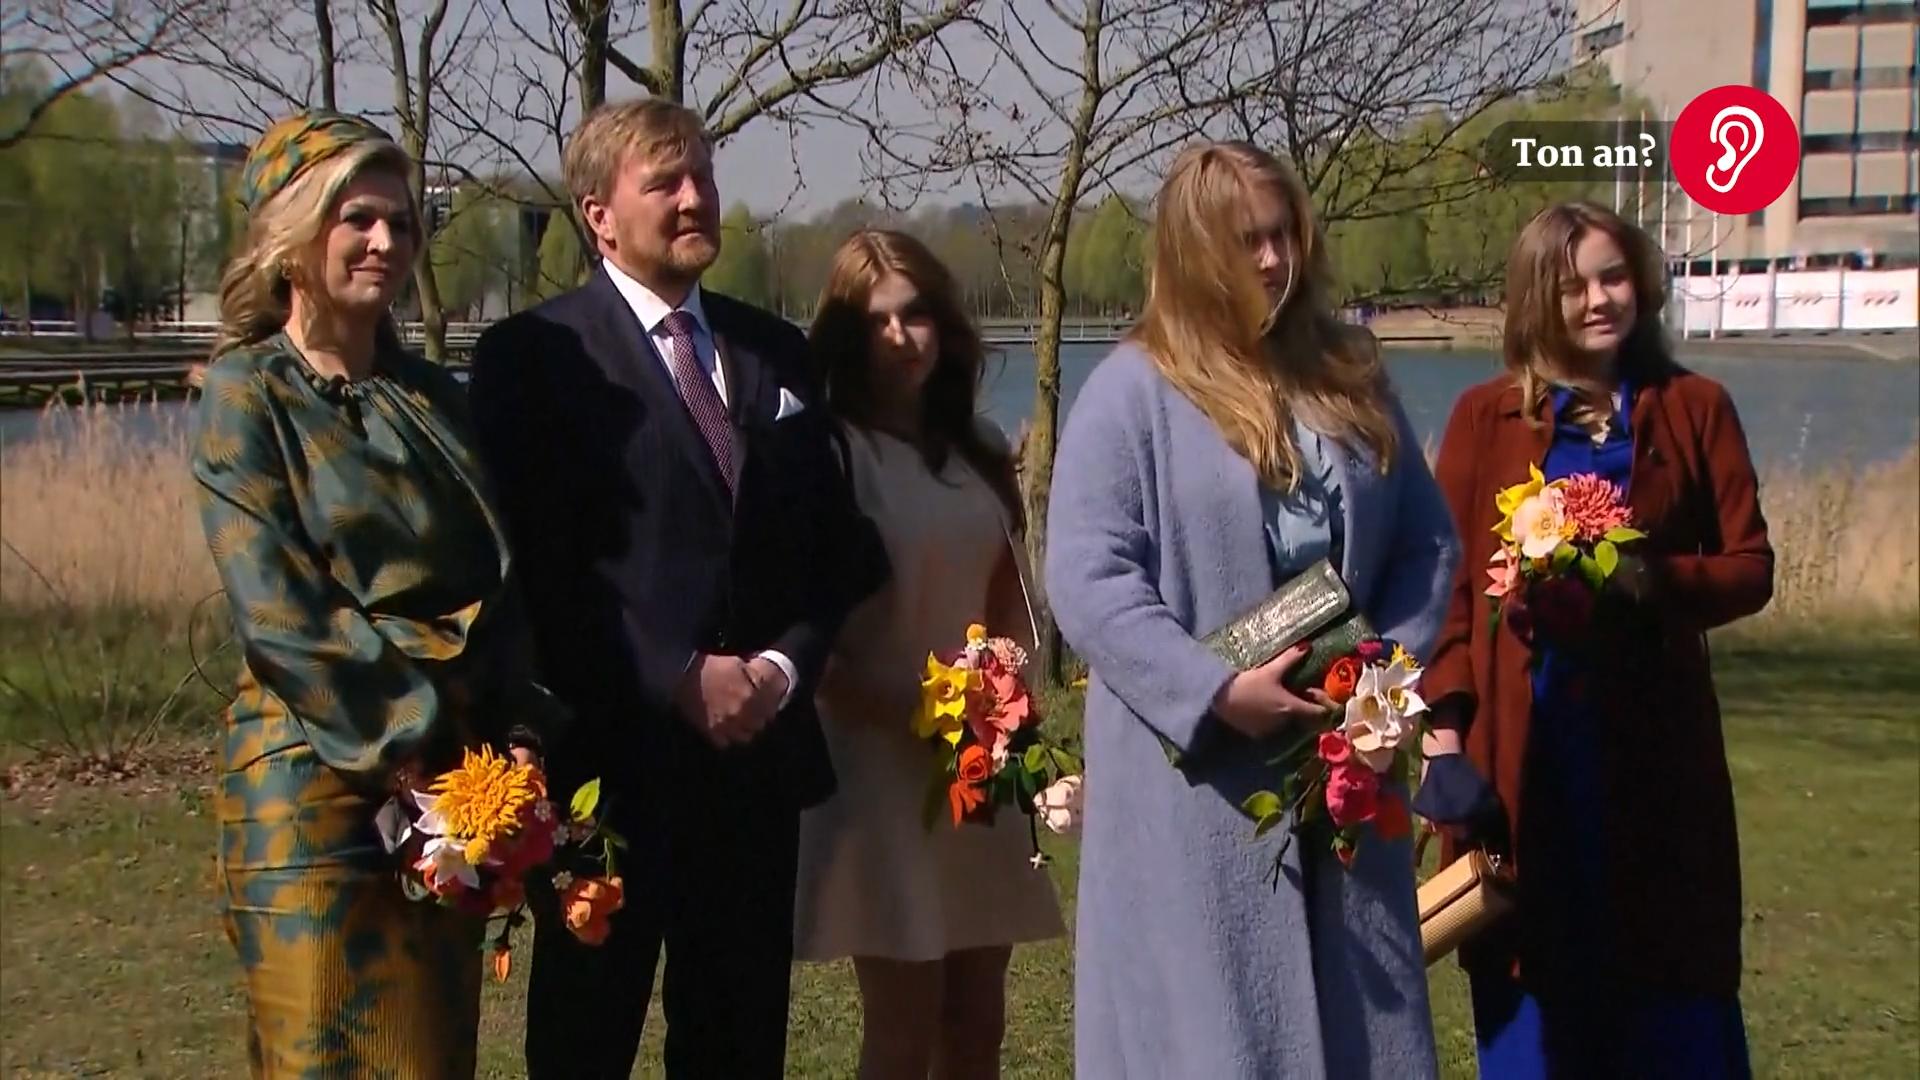 Farbenfroher Auftritt der niederländischen Royals An Willem-Alexanders 54. Geburtstag